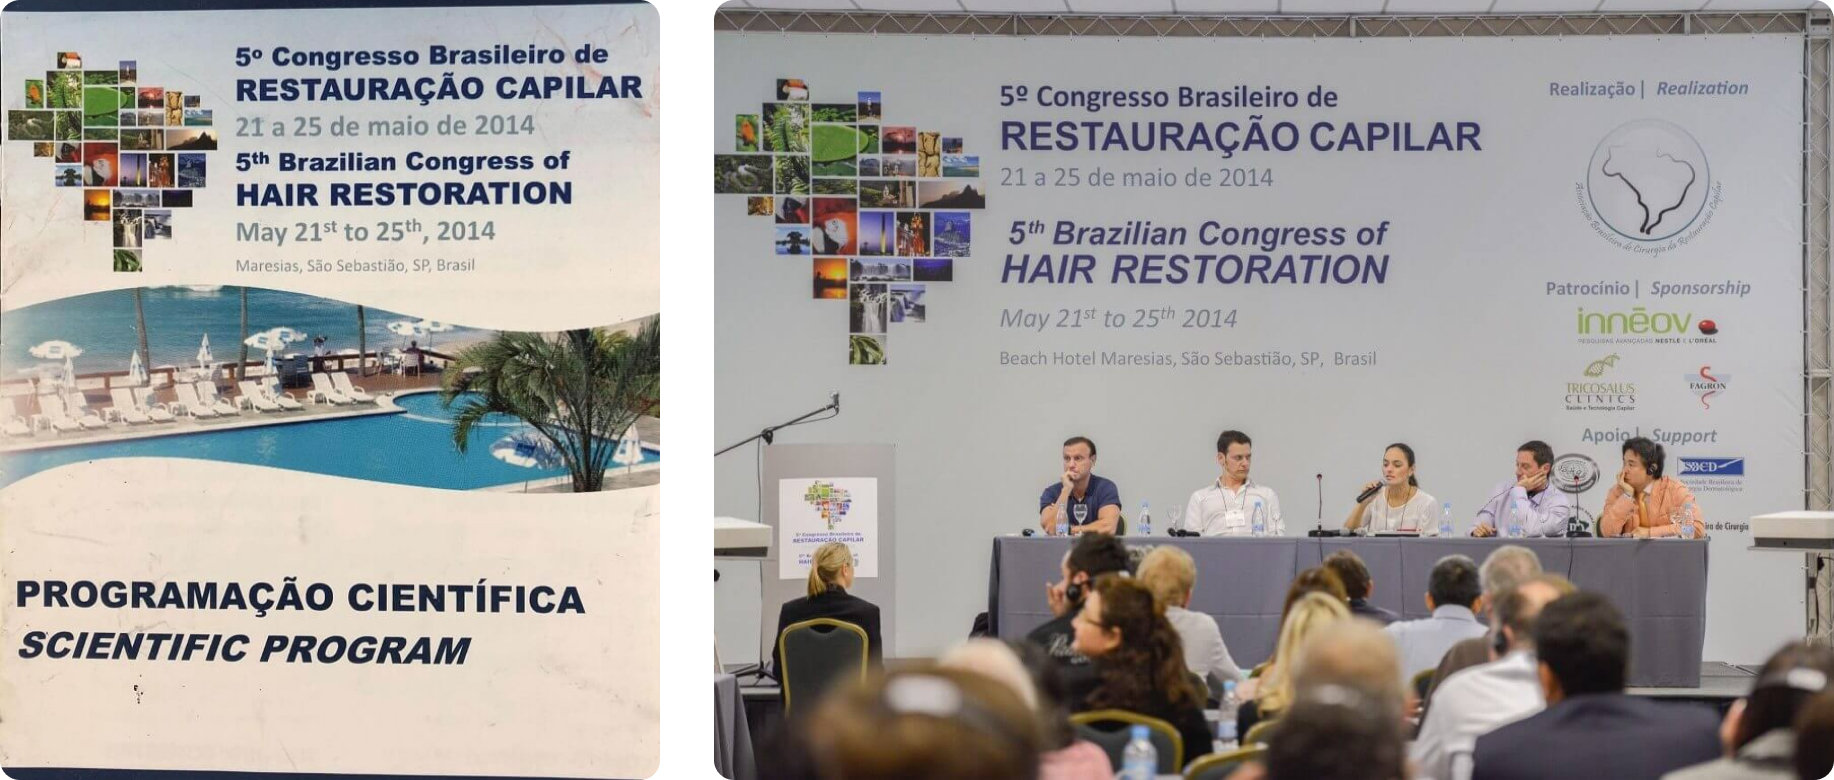 ブラジル ブラジル毛髪学会招待講演 「Hair Restoration with Robot Assist」